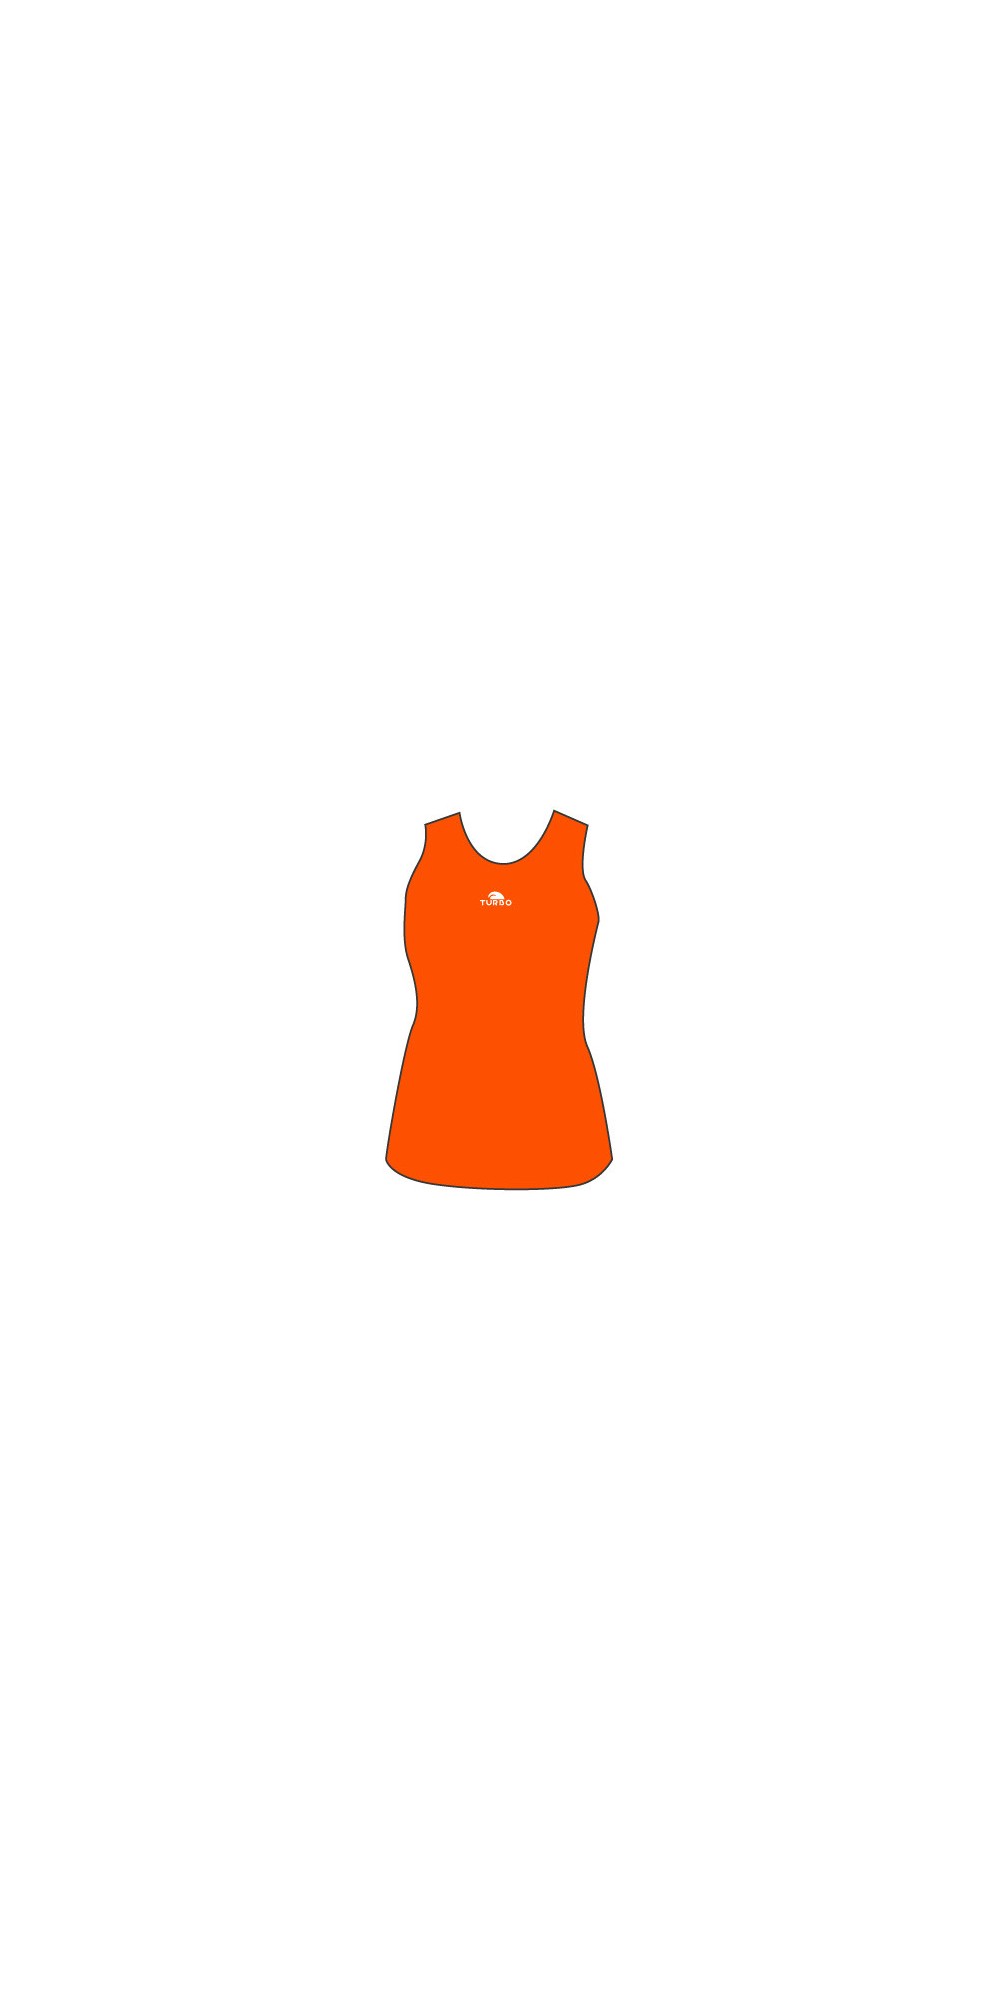 Débardeur Coton Orange Femme